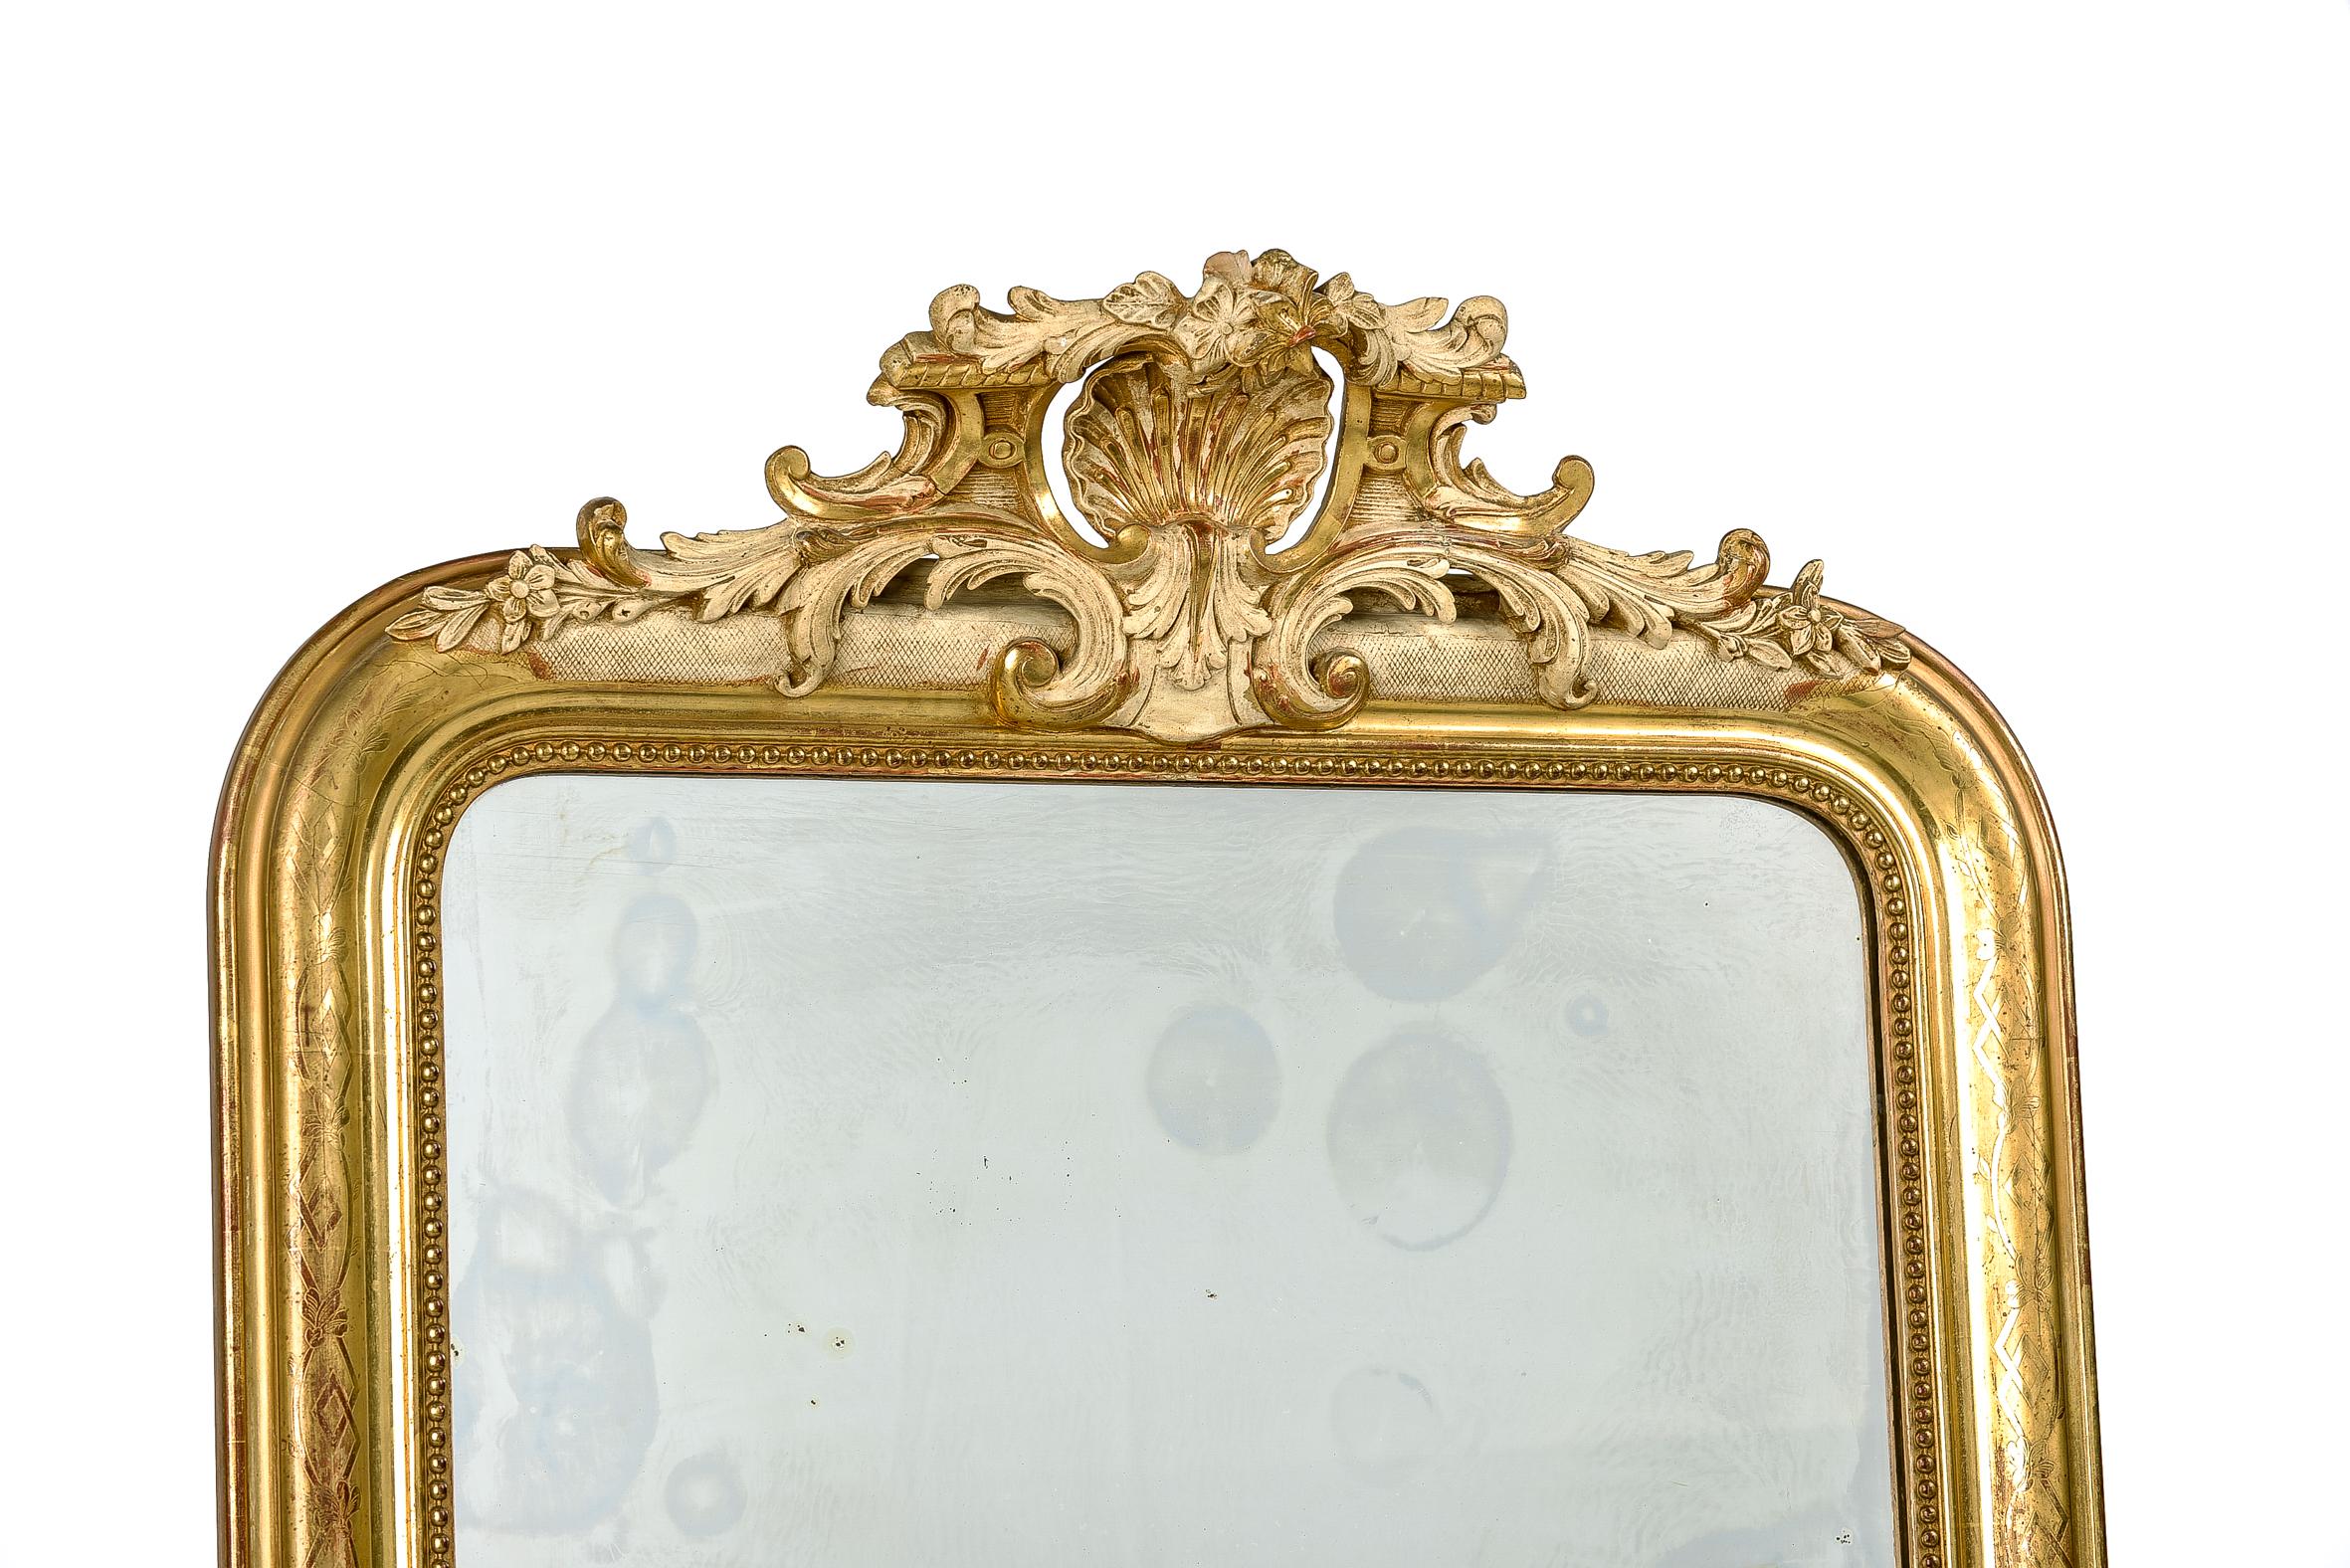 Un beau miroir ancien originaire de France, vers 1870. Le miroir présente les angles supérieurs arrondis typiques des miroirs Louis Philippe. Le miroir présente une riche crête ornementée avec un motif central de coquille Saint-Jacques flanqué